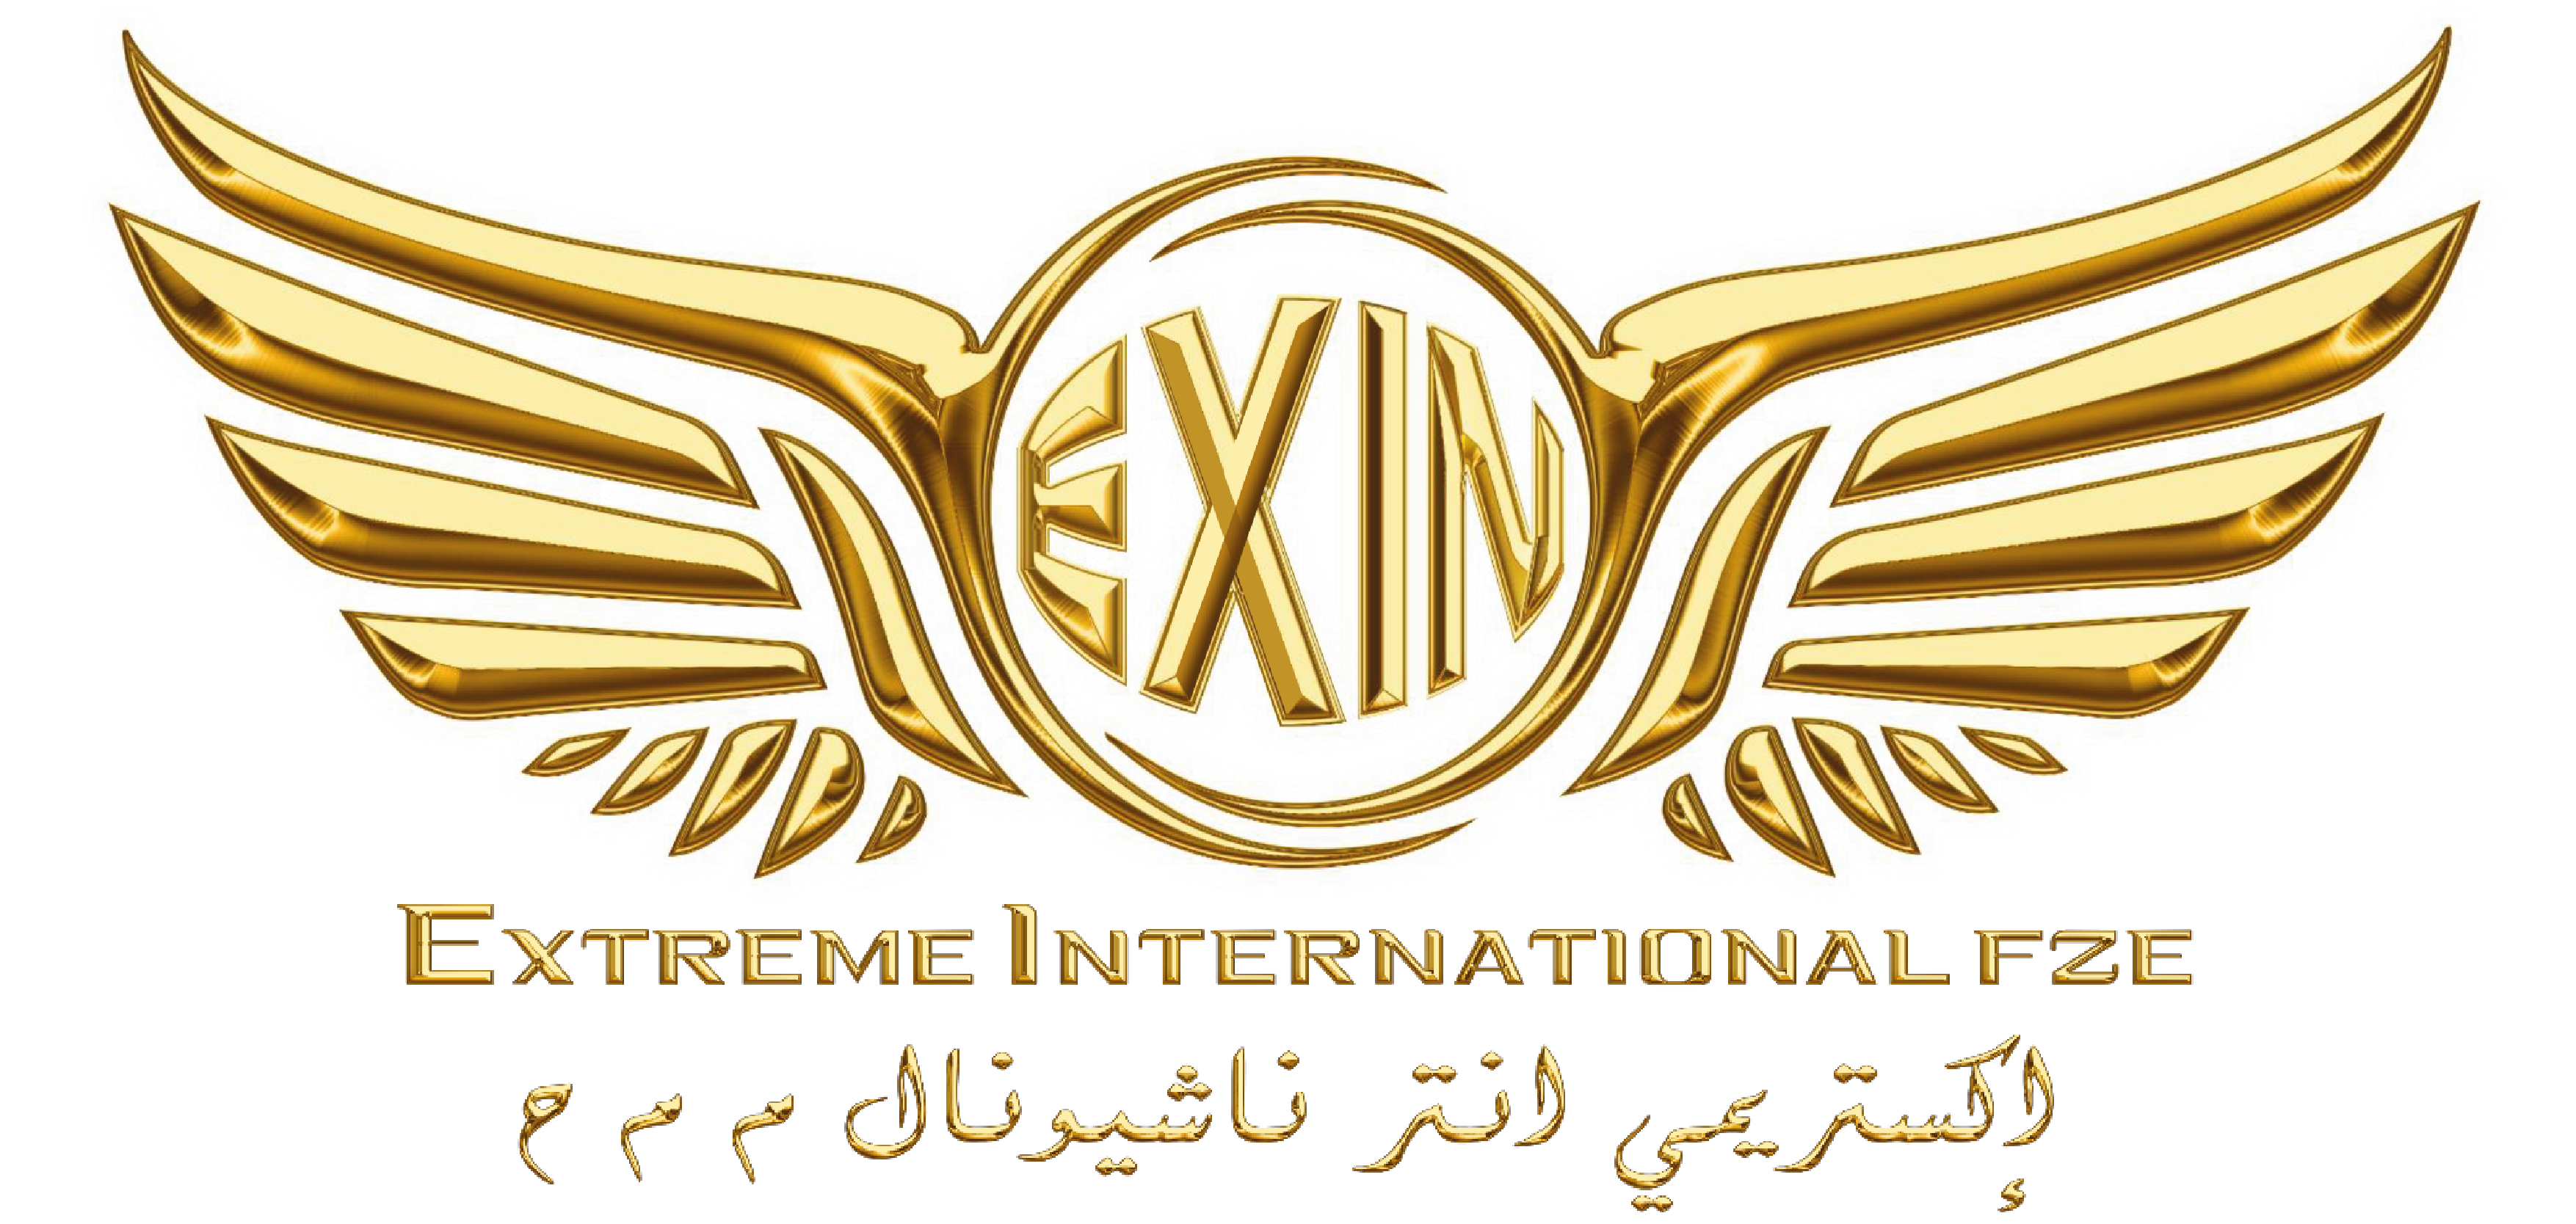 Extreme Logo